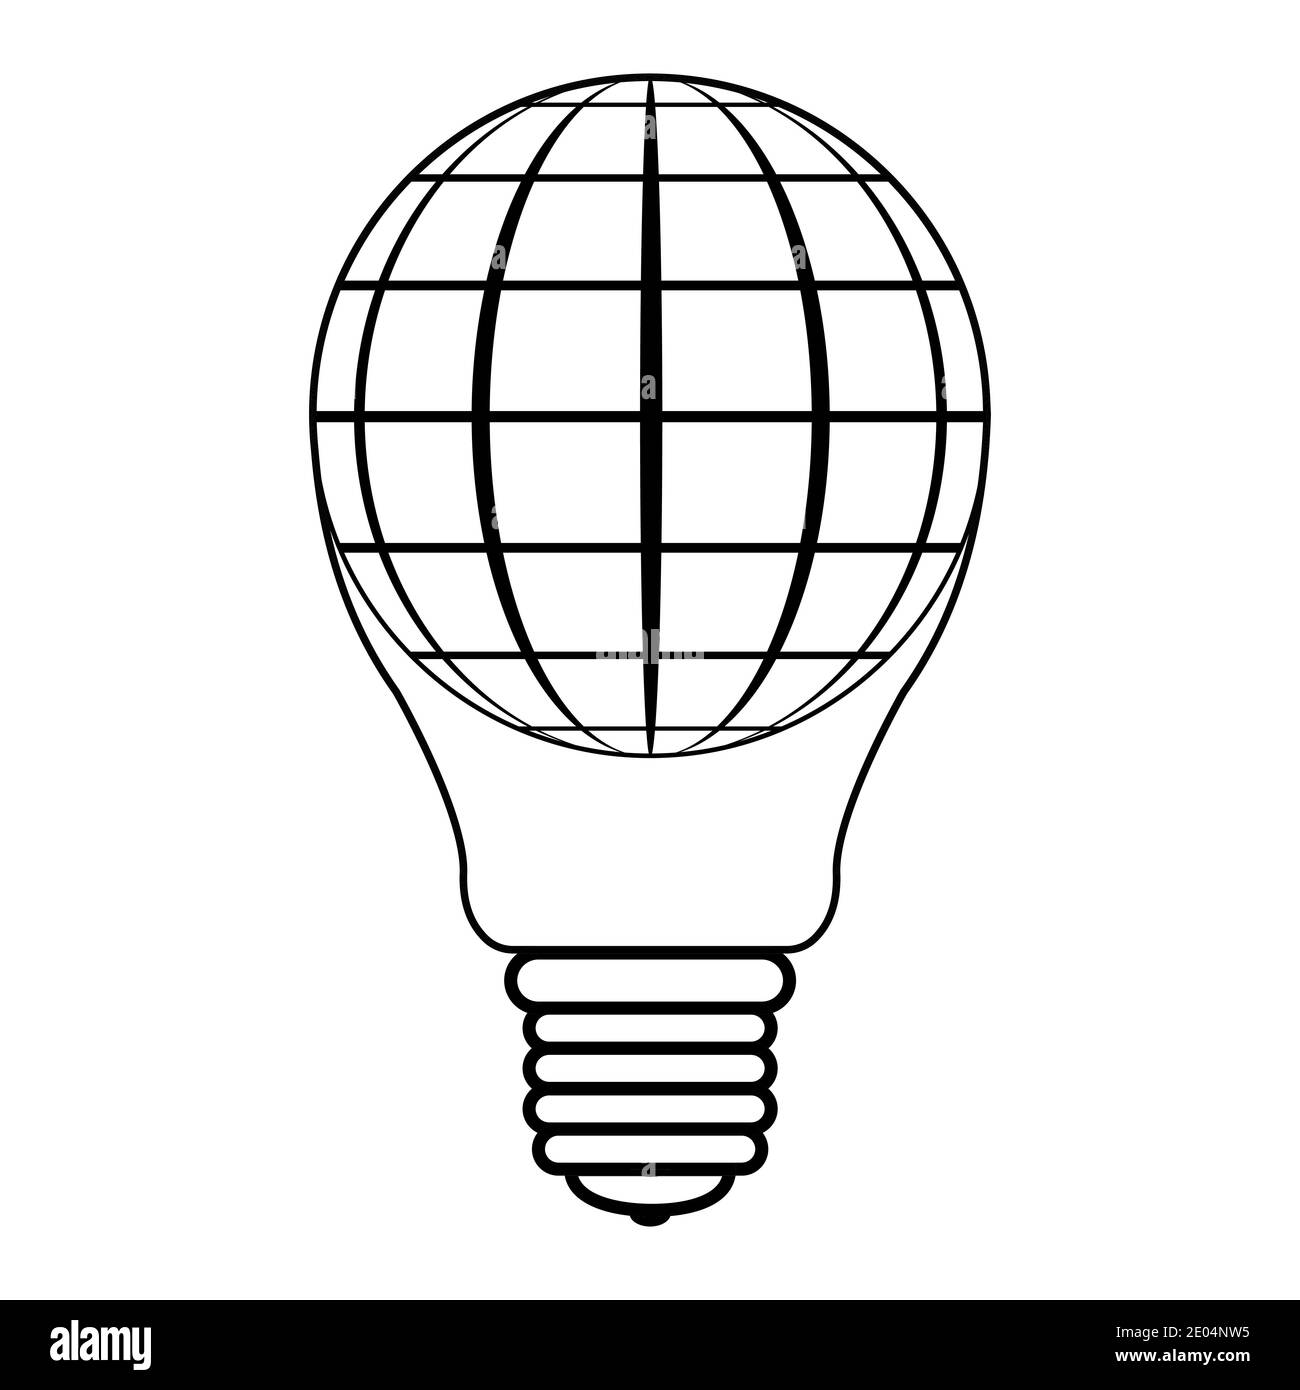 icono logo globo en la forma de bombillas y esferas globo planeta tierra, vector bombilla globo concepto de paz, éxito de negocios y la paz Ilustración del Vector